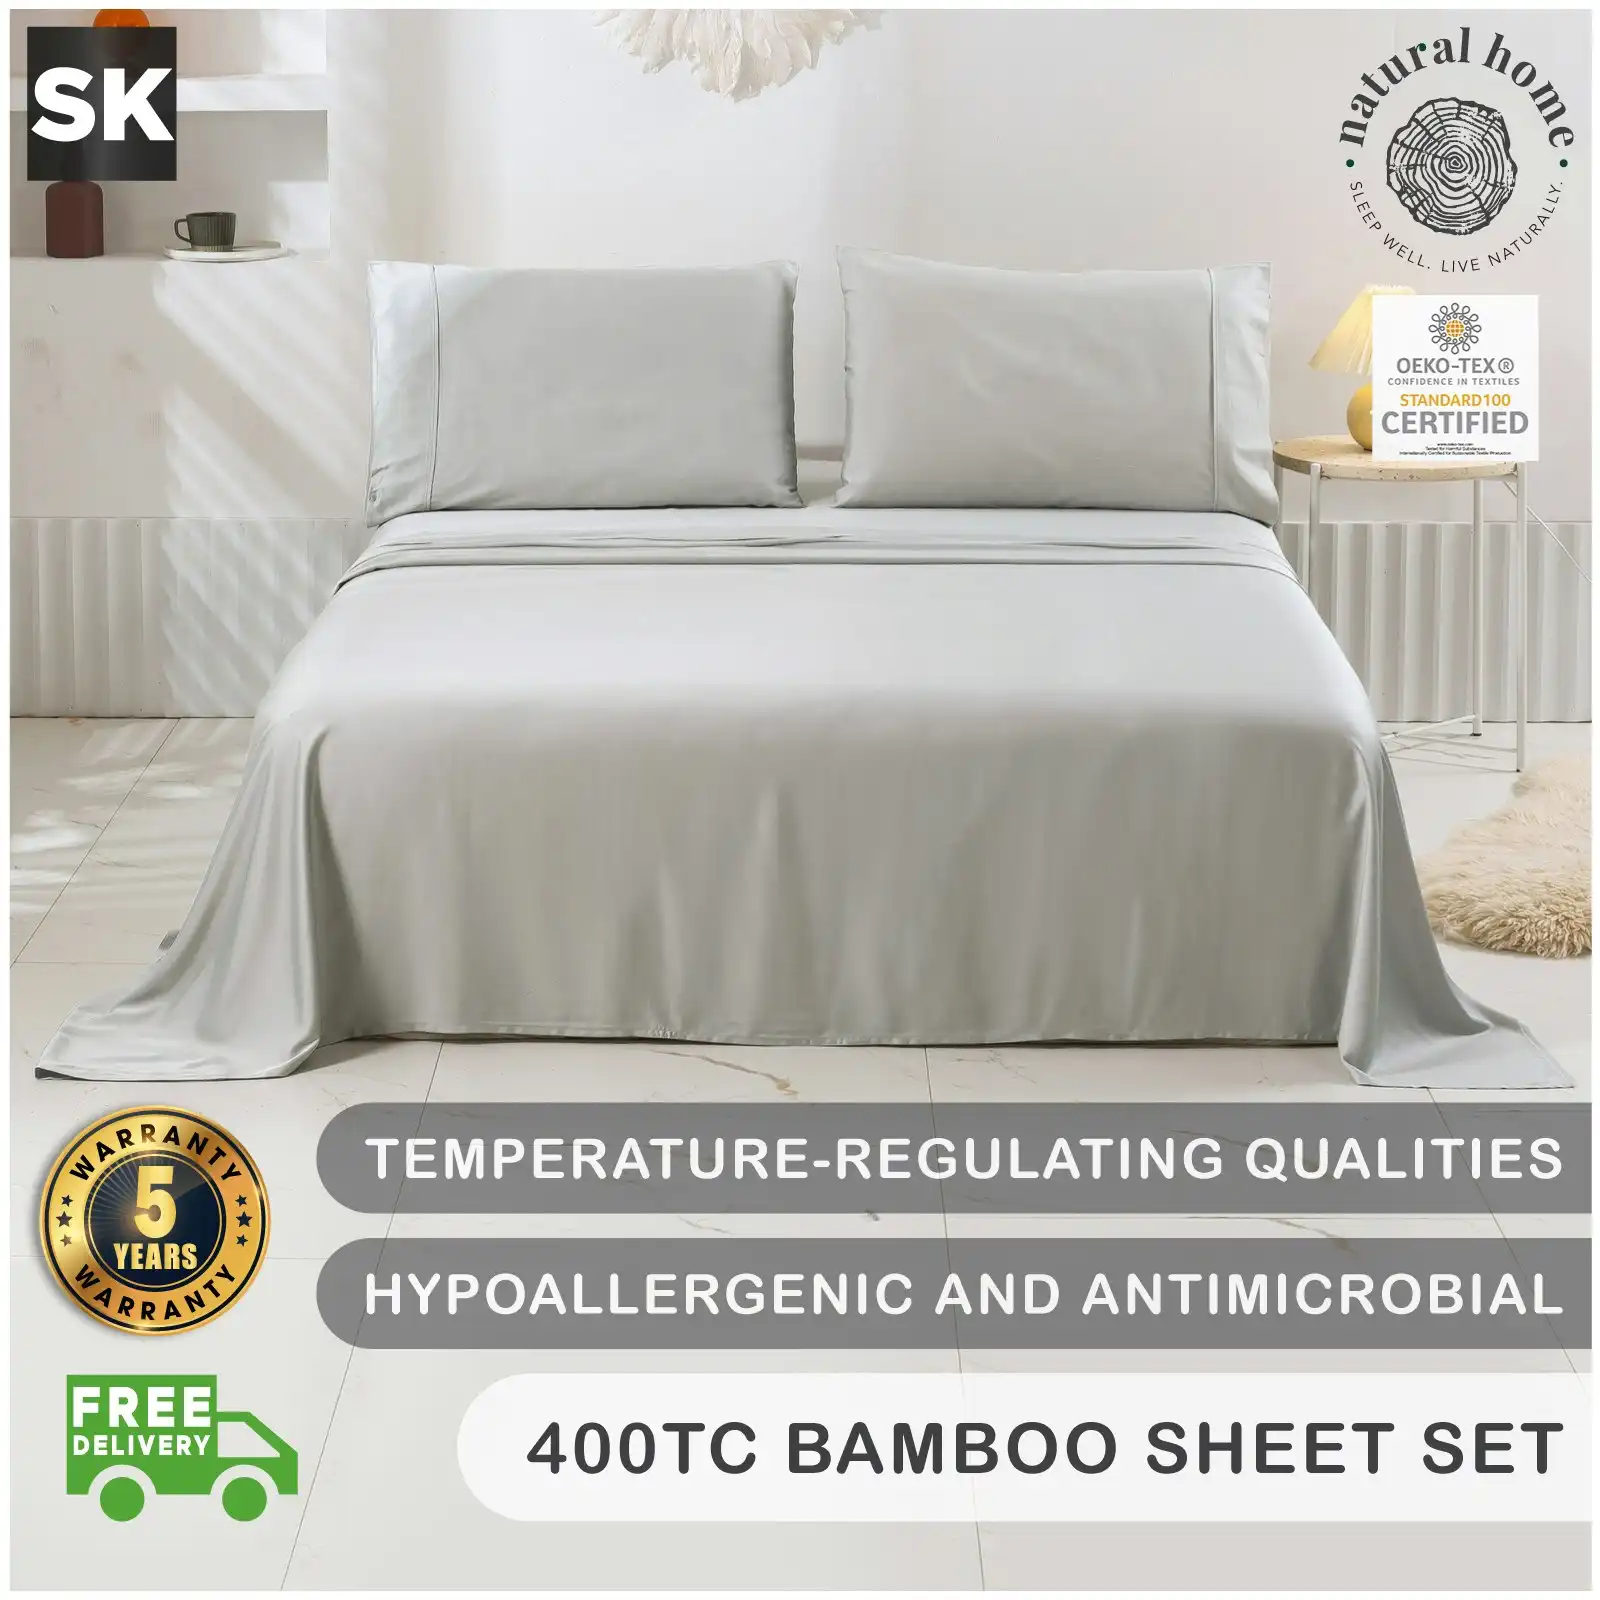 Natural Home Bamboo Sheet Set Dove Grey Super King Bed